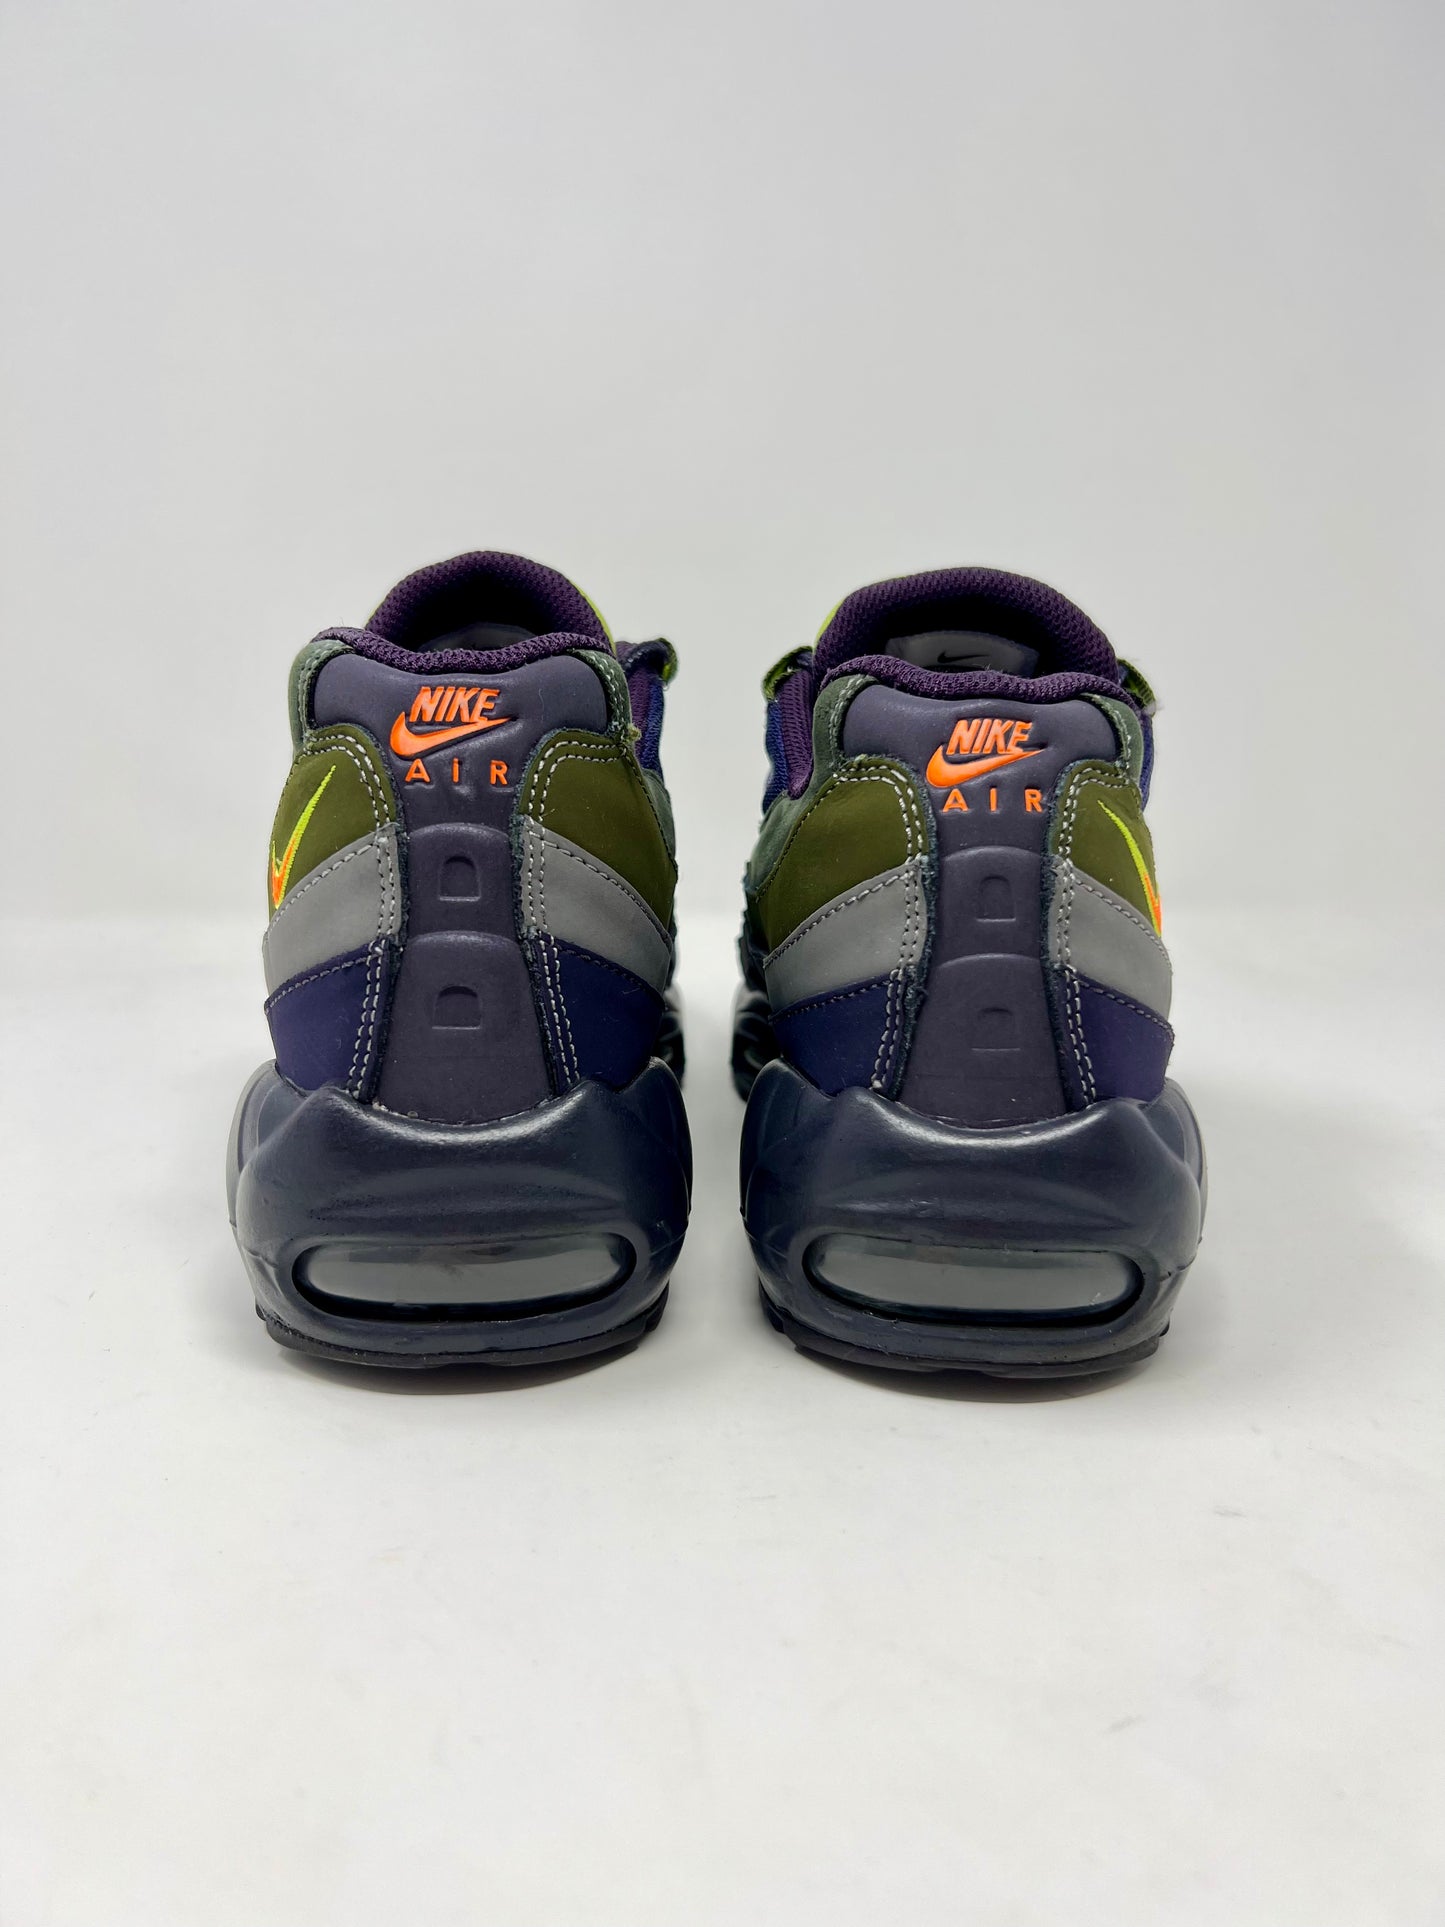 Nike Air Max 95 Cave Purple UK8.5